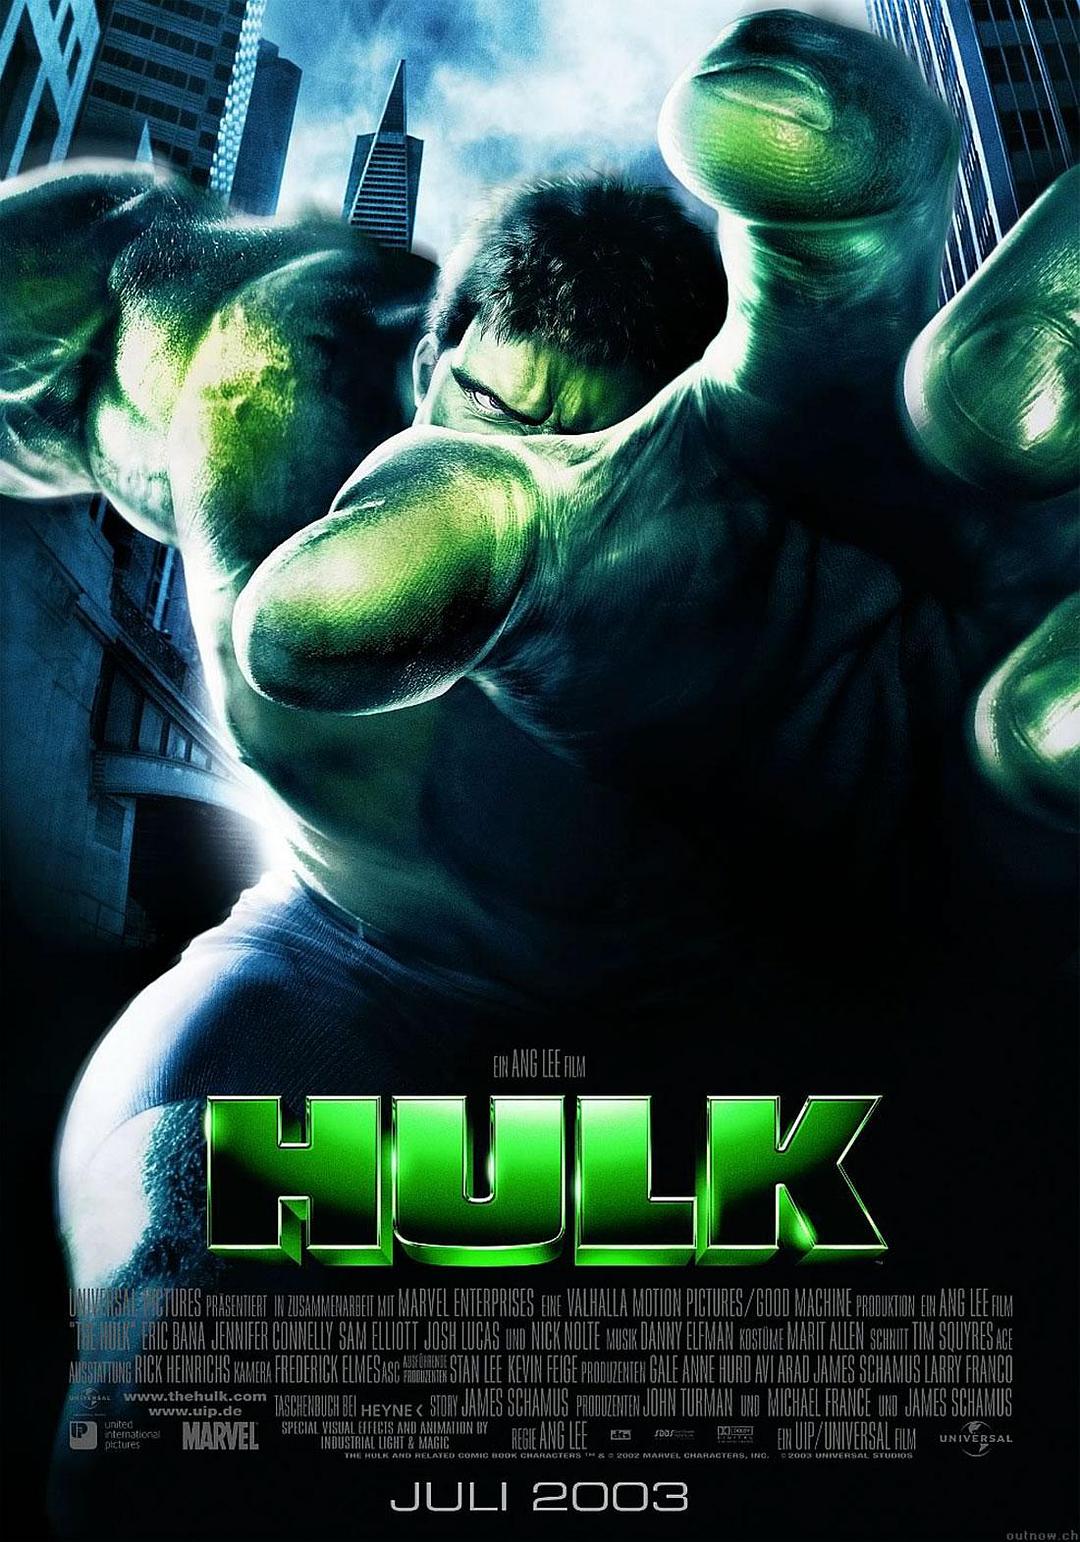 绿伟人浩克 Hulk.2003.2160p.BluRay.HEVC.DTS-X.7.1-TERMiNAL 81.69GB-1.png